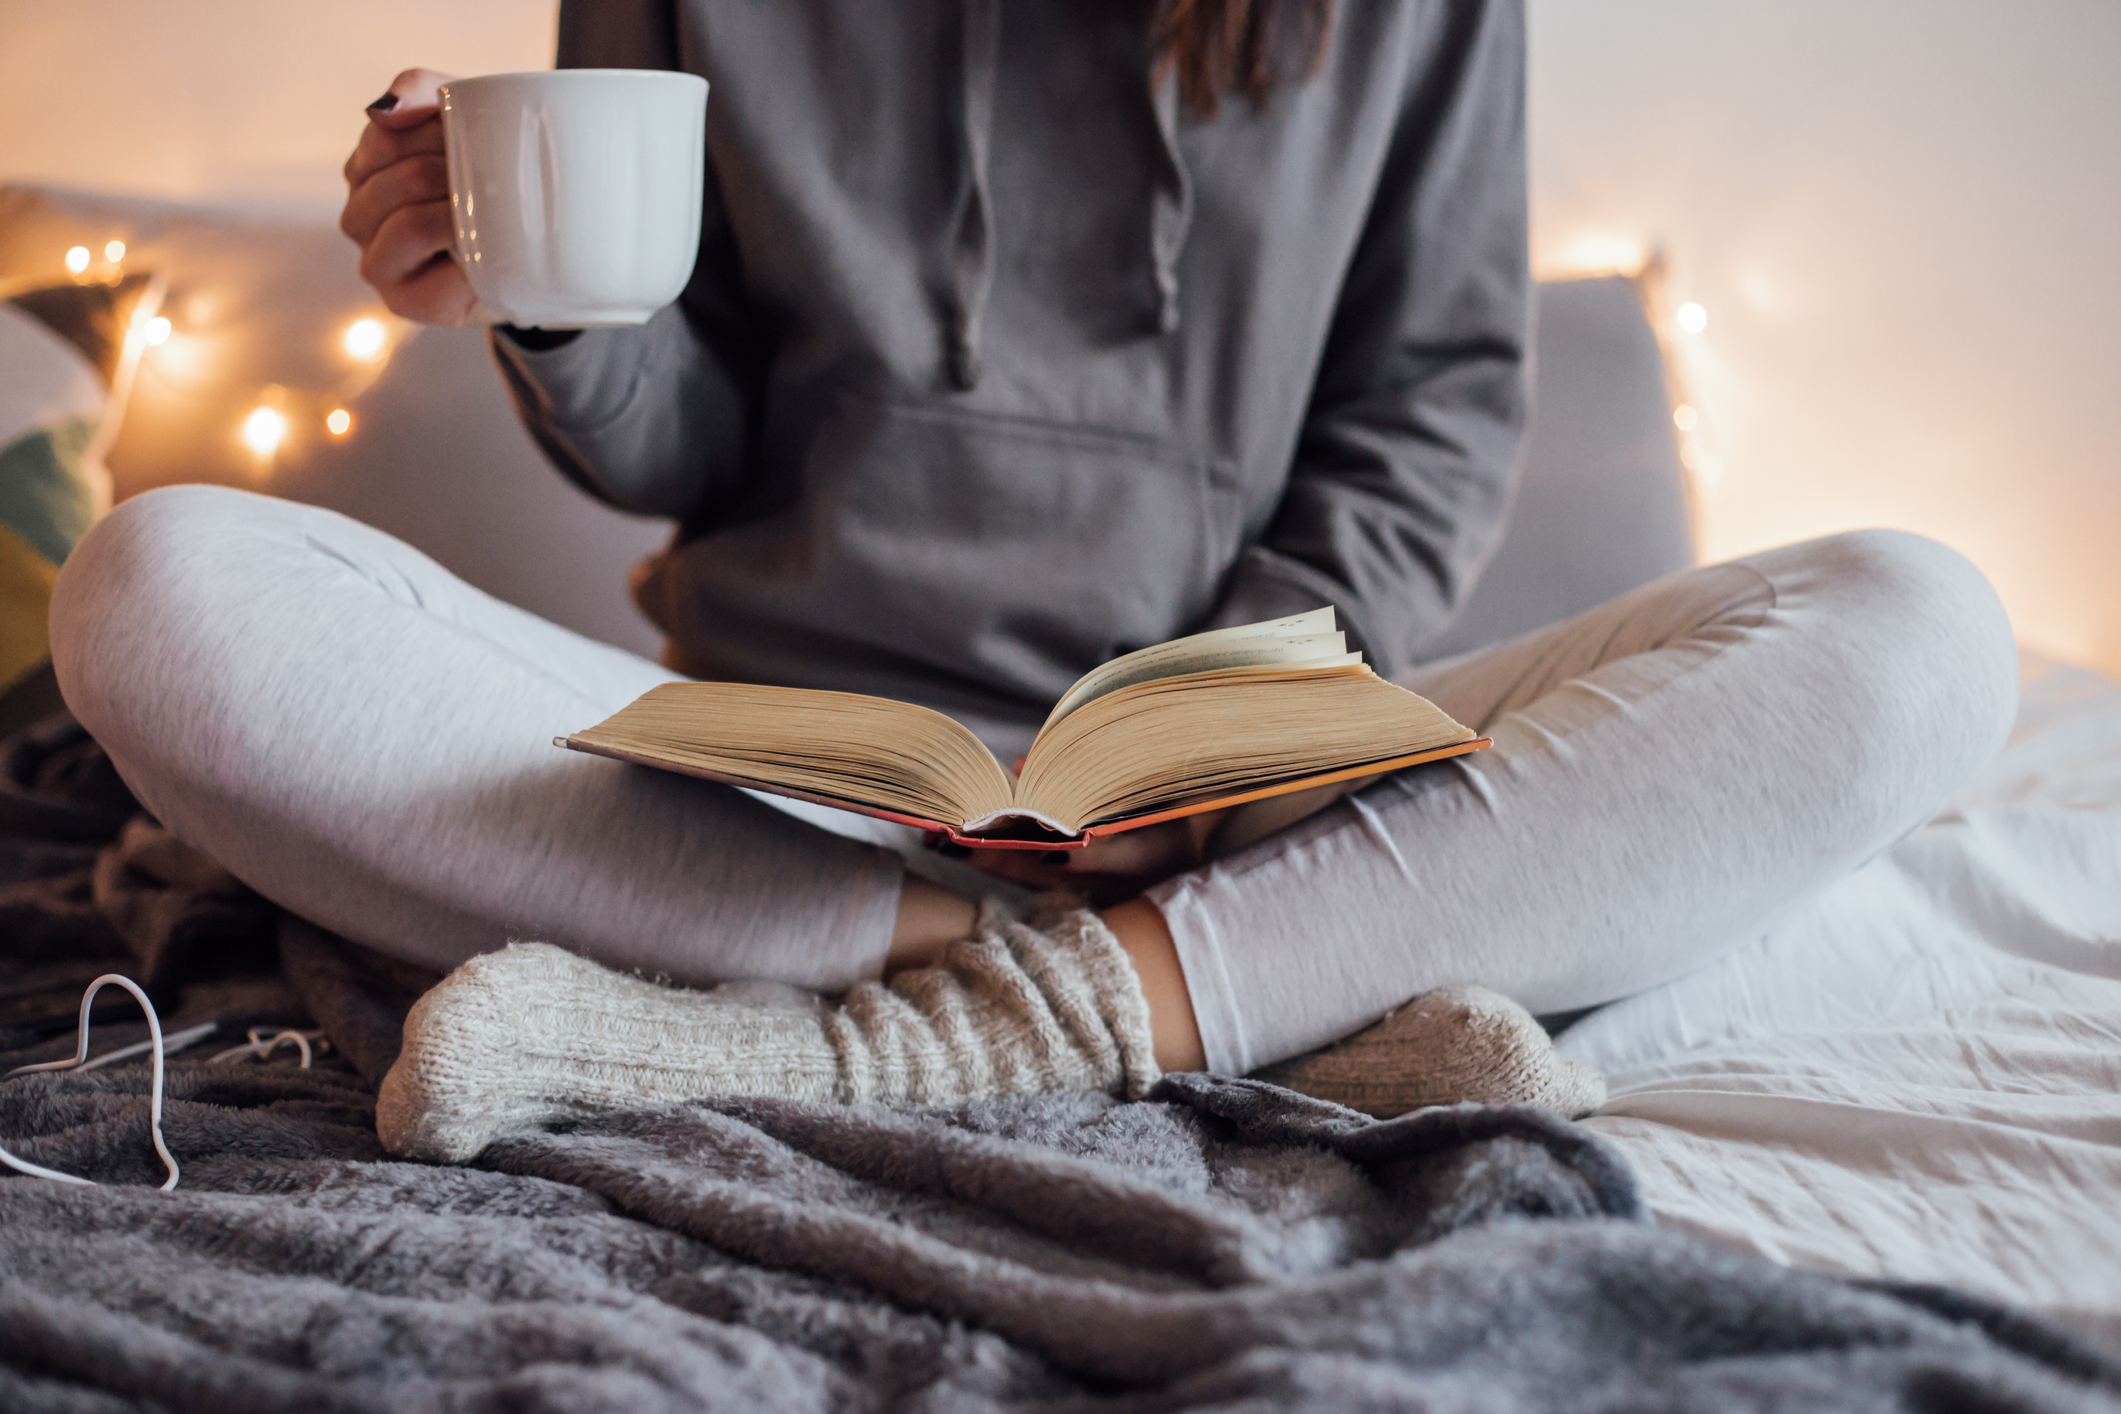 6.
<div>Подарената книга говори, че сте загрижен за здравето на другия. Много изследвания установиха, че четенето е от полза за здравето. То стимулира паметта и намалява стреса, а има също и положителен ефект върху съня.</div>